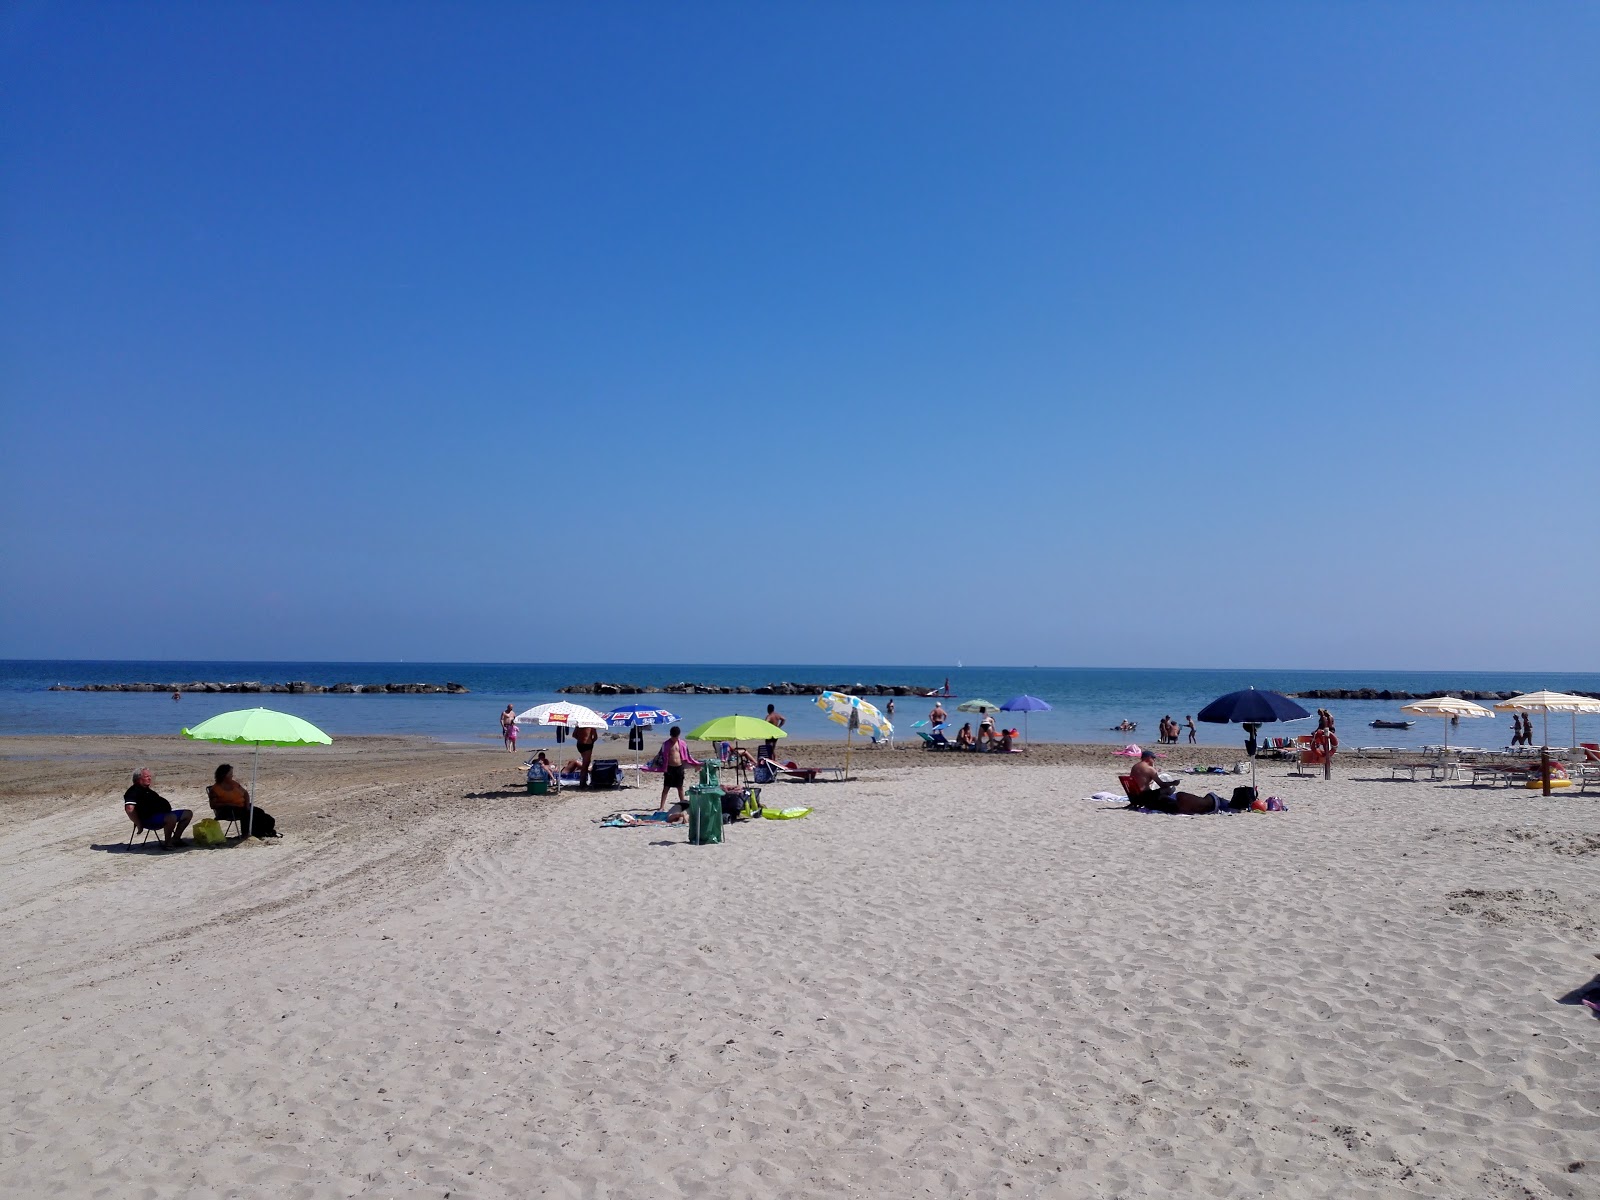 Oasi Beach的照片 具有非常干净级别的清洁度